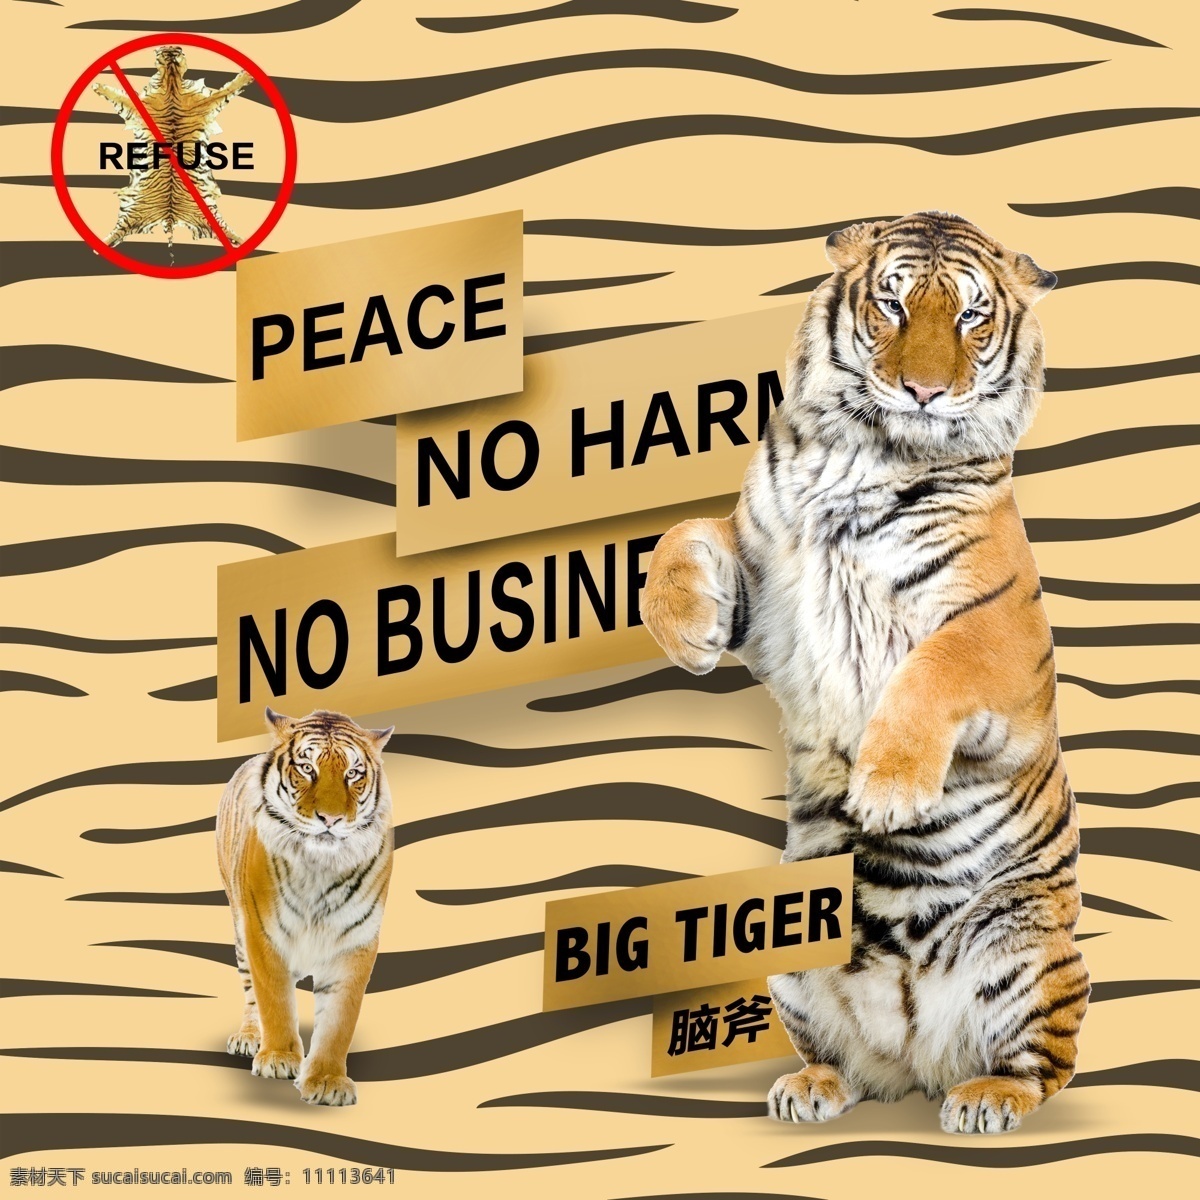 大老虎 虎纹 虎斑 大脑斧 野生动物 保护老虎 保护动物 动物海报 老虎海报 禁止